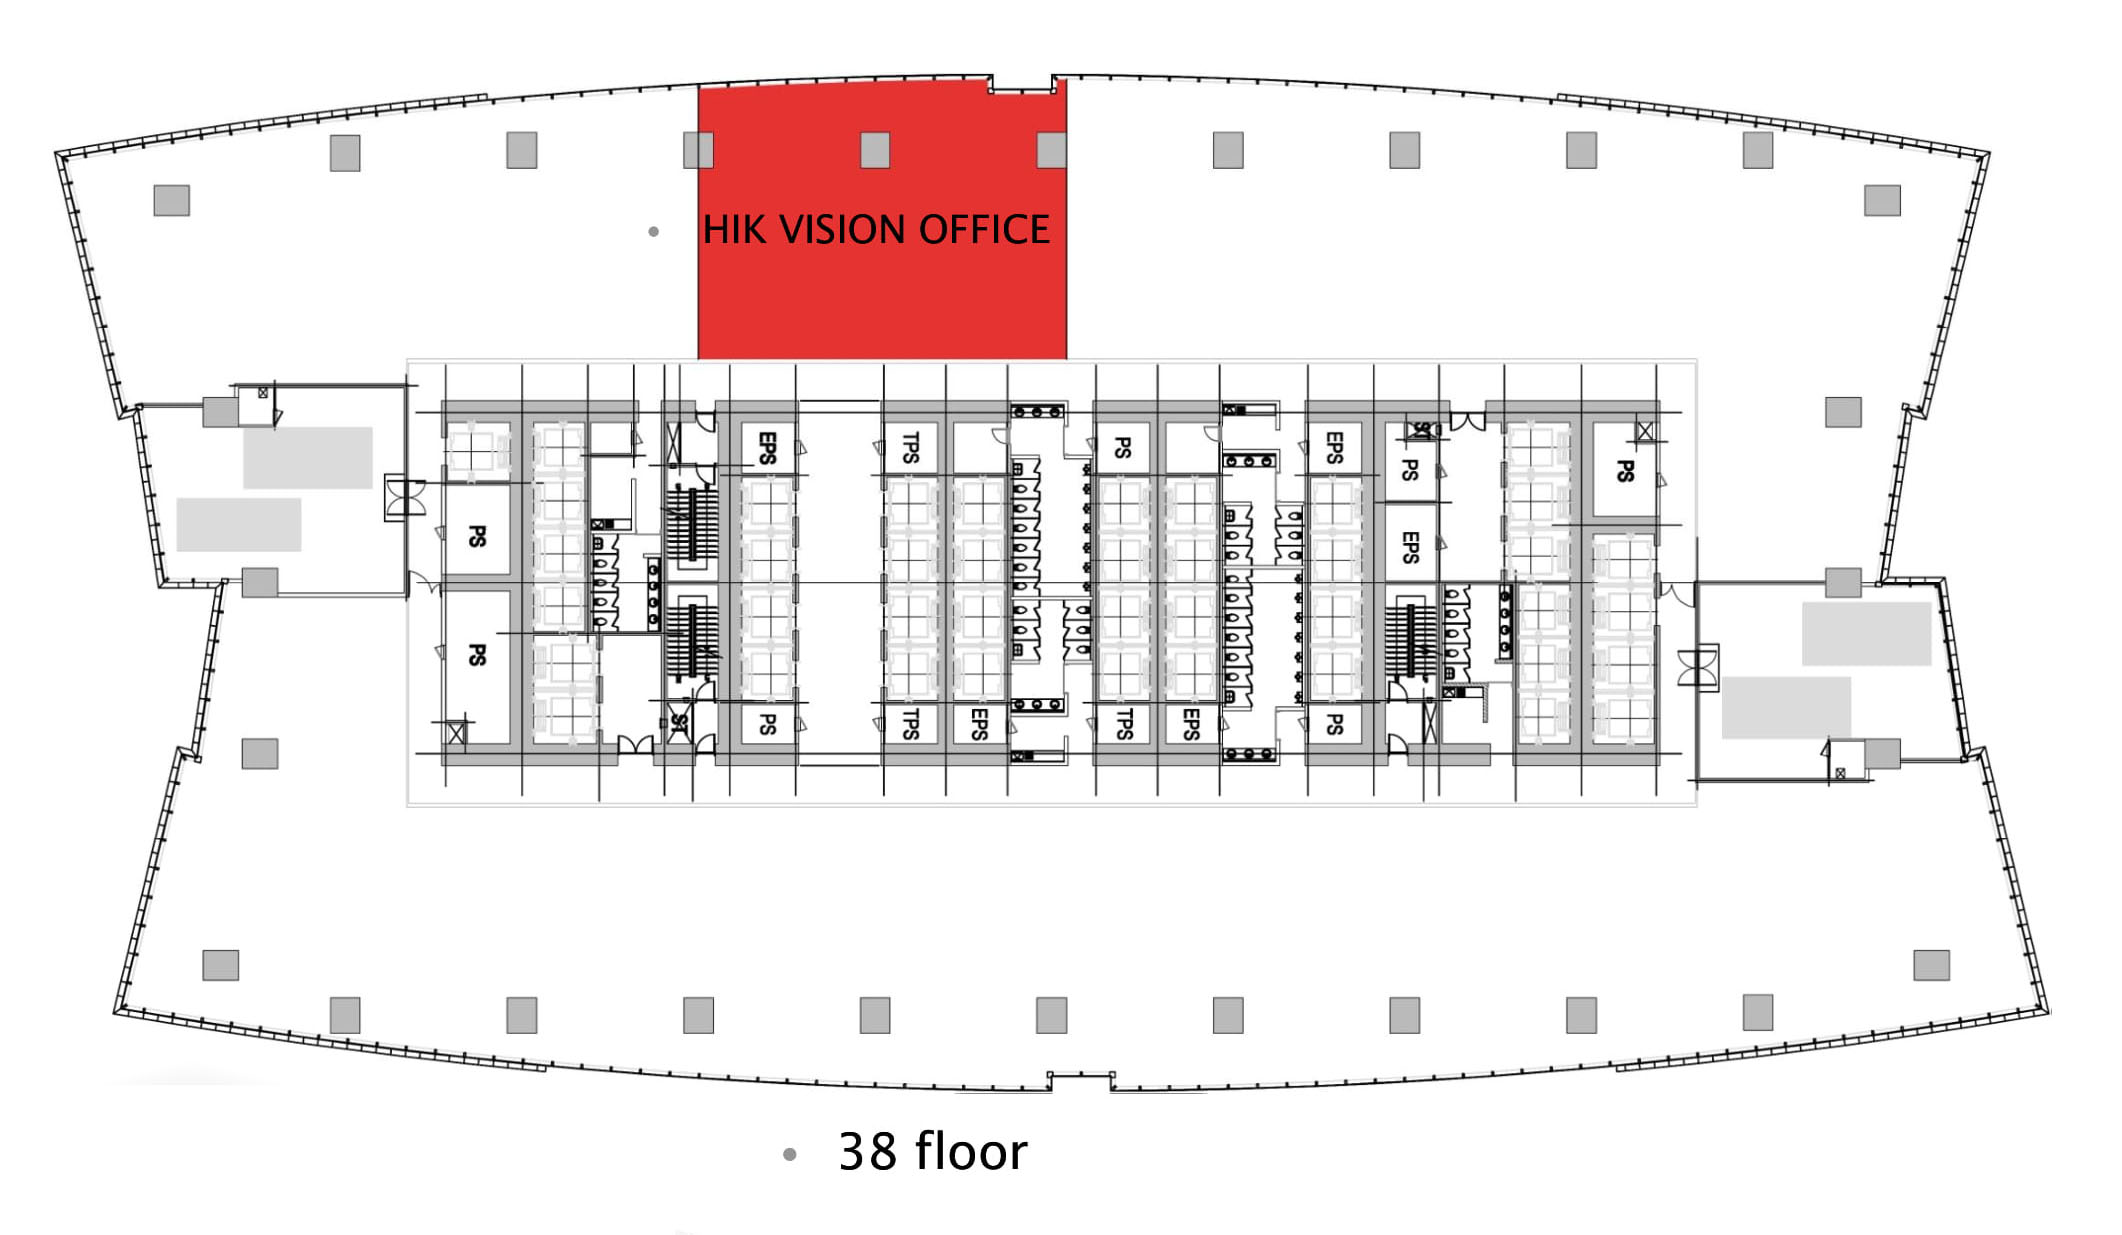 Thiết kế và thi công nội thất văn phòng Hik Vision